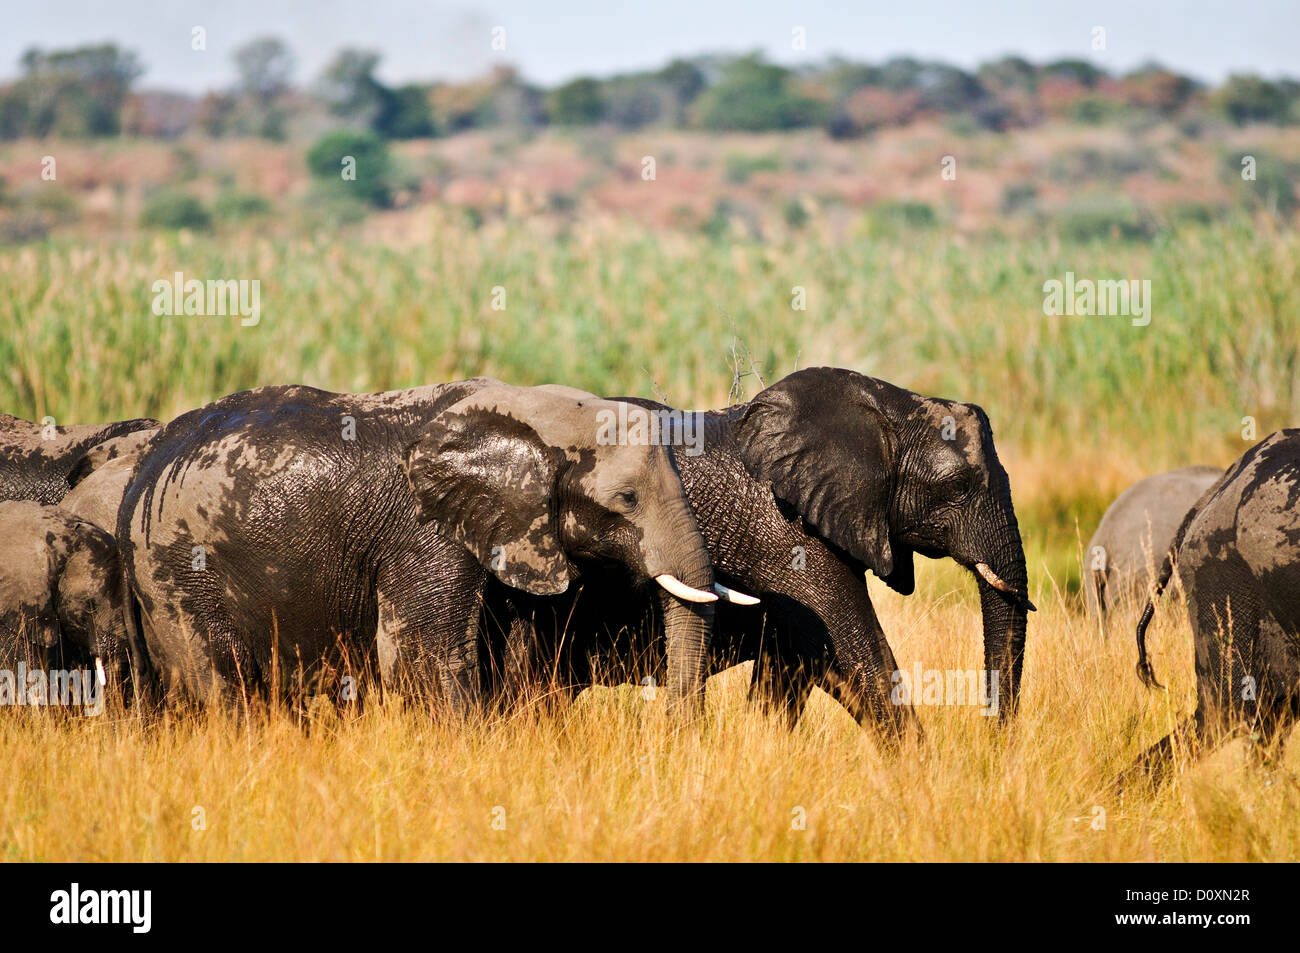 Africa Bwa Bwata Parco Nazionale di Caprivi pascolare Namibia elefanti africani praterie bagno avorio orizzontale la migrazione Foto Stock